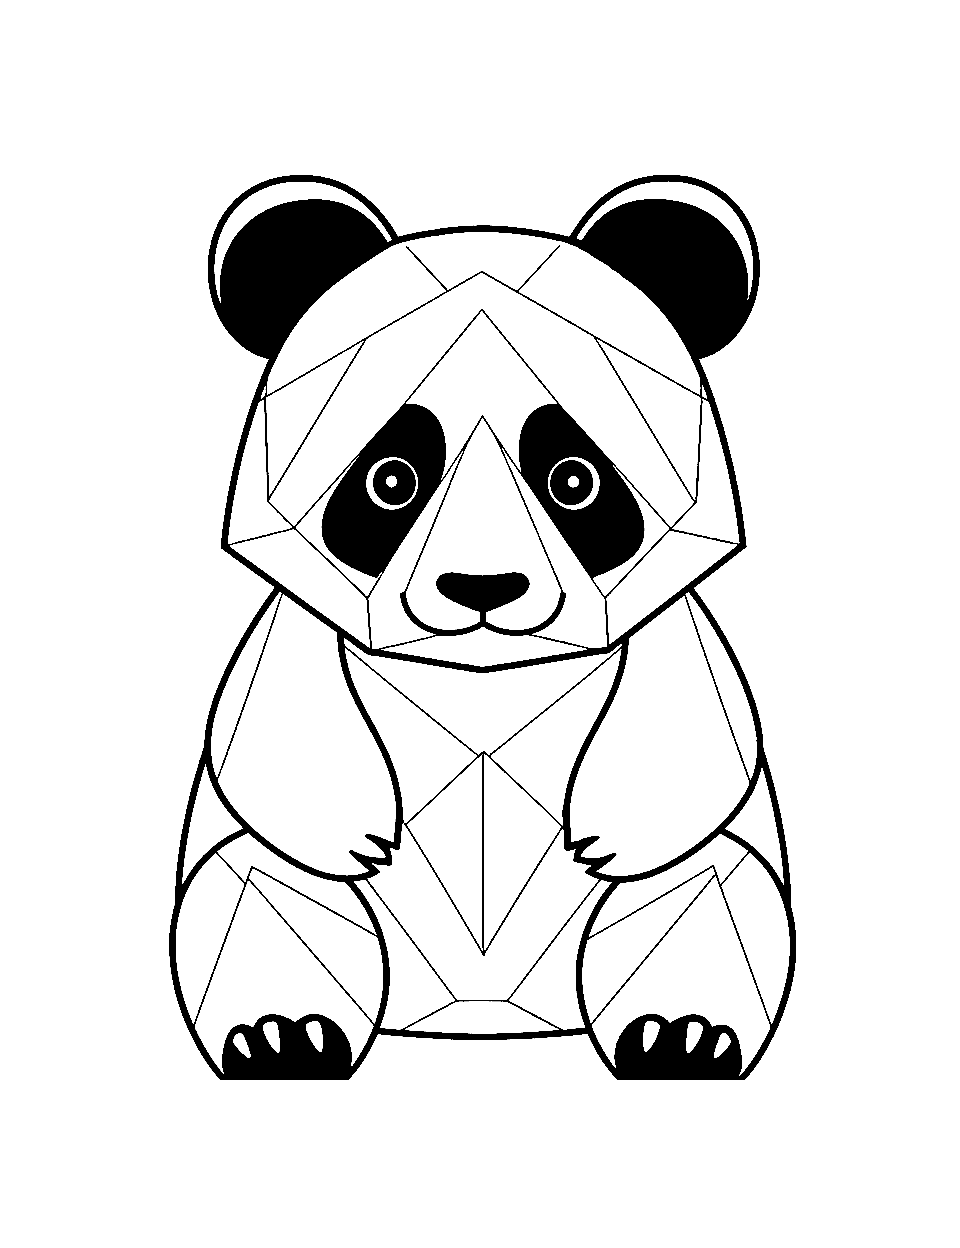 Panda coloring pages free printable sheets